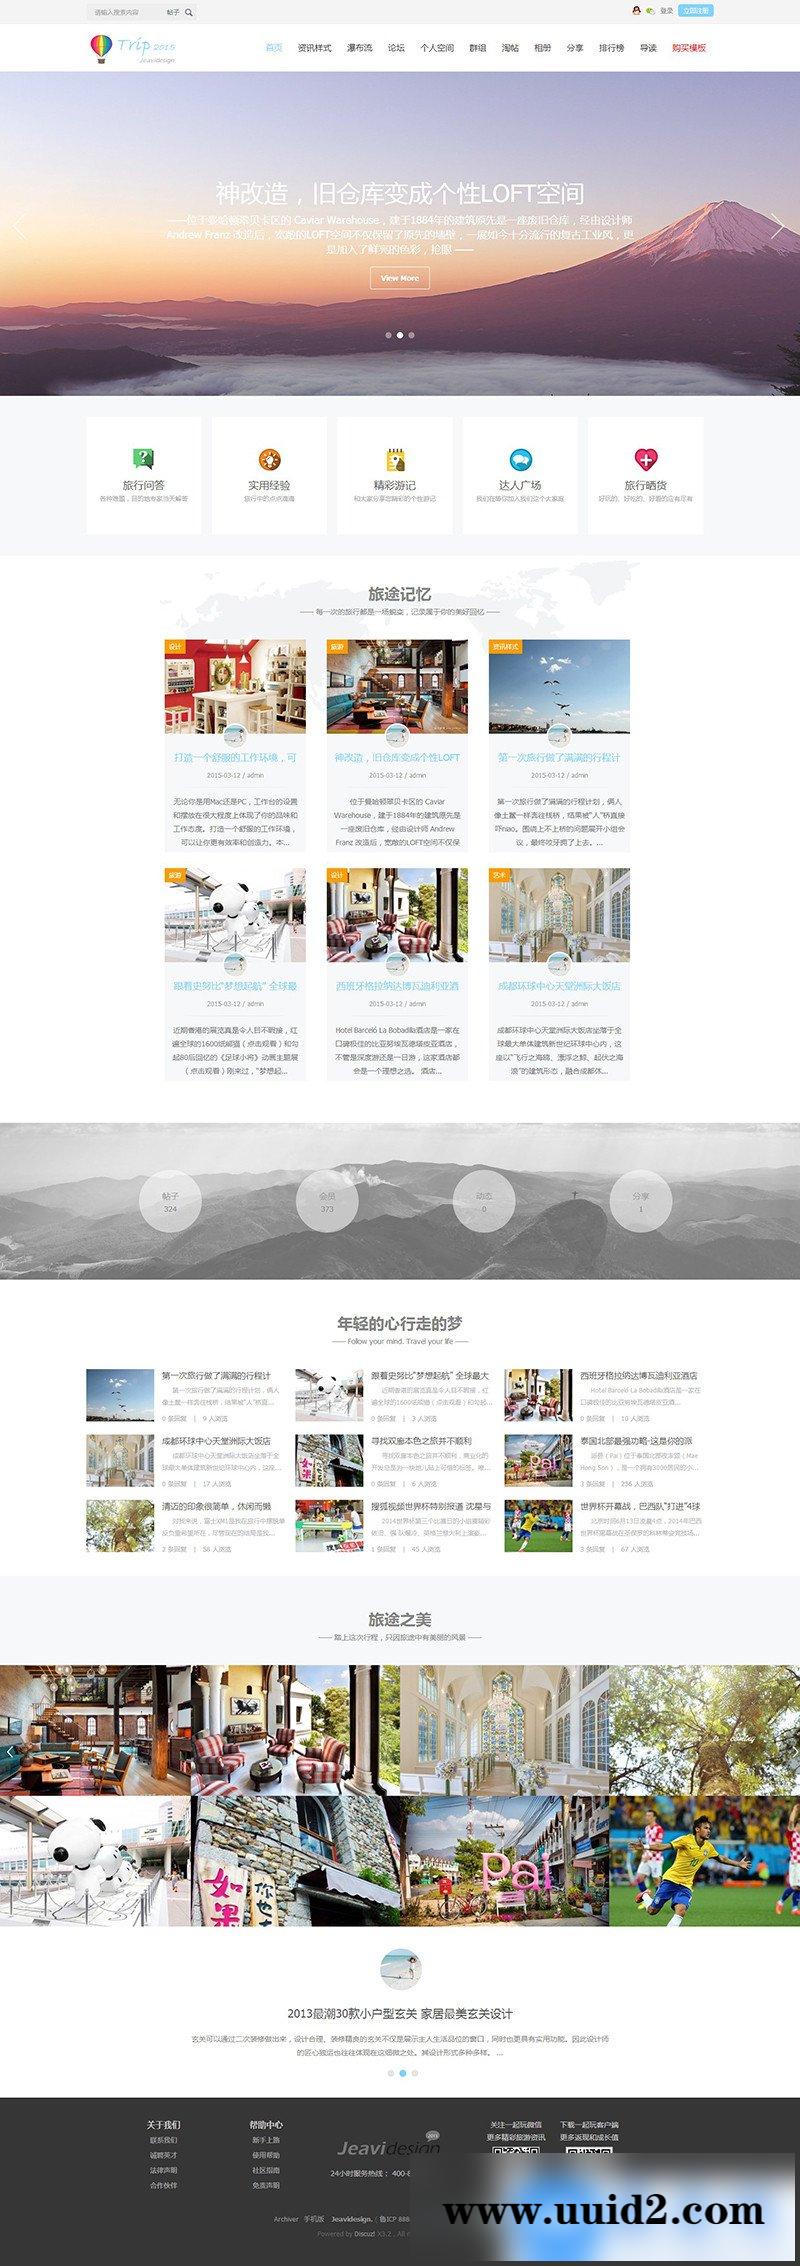 discuz旅游旅行网站模板 dz网站模板源码下载